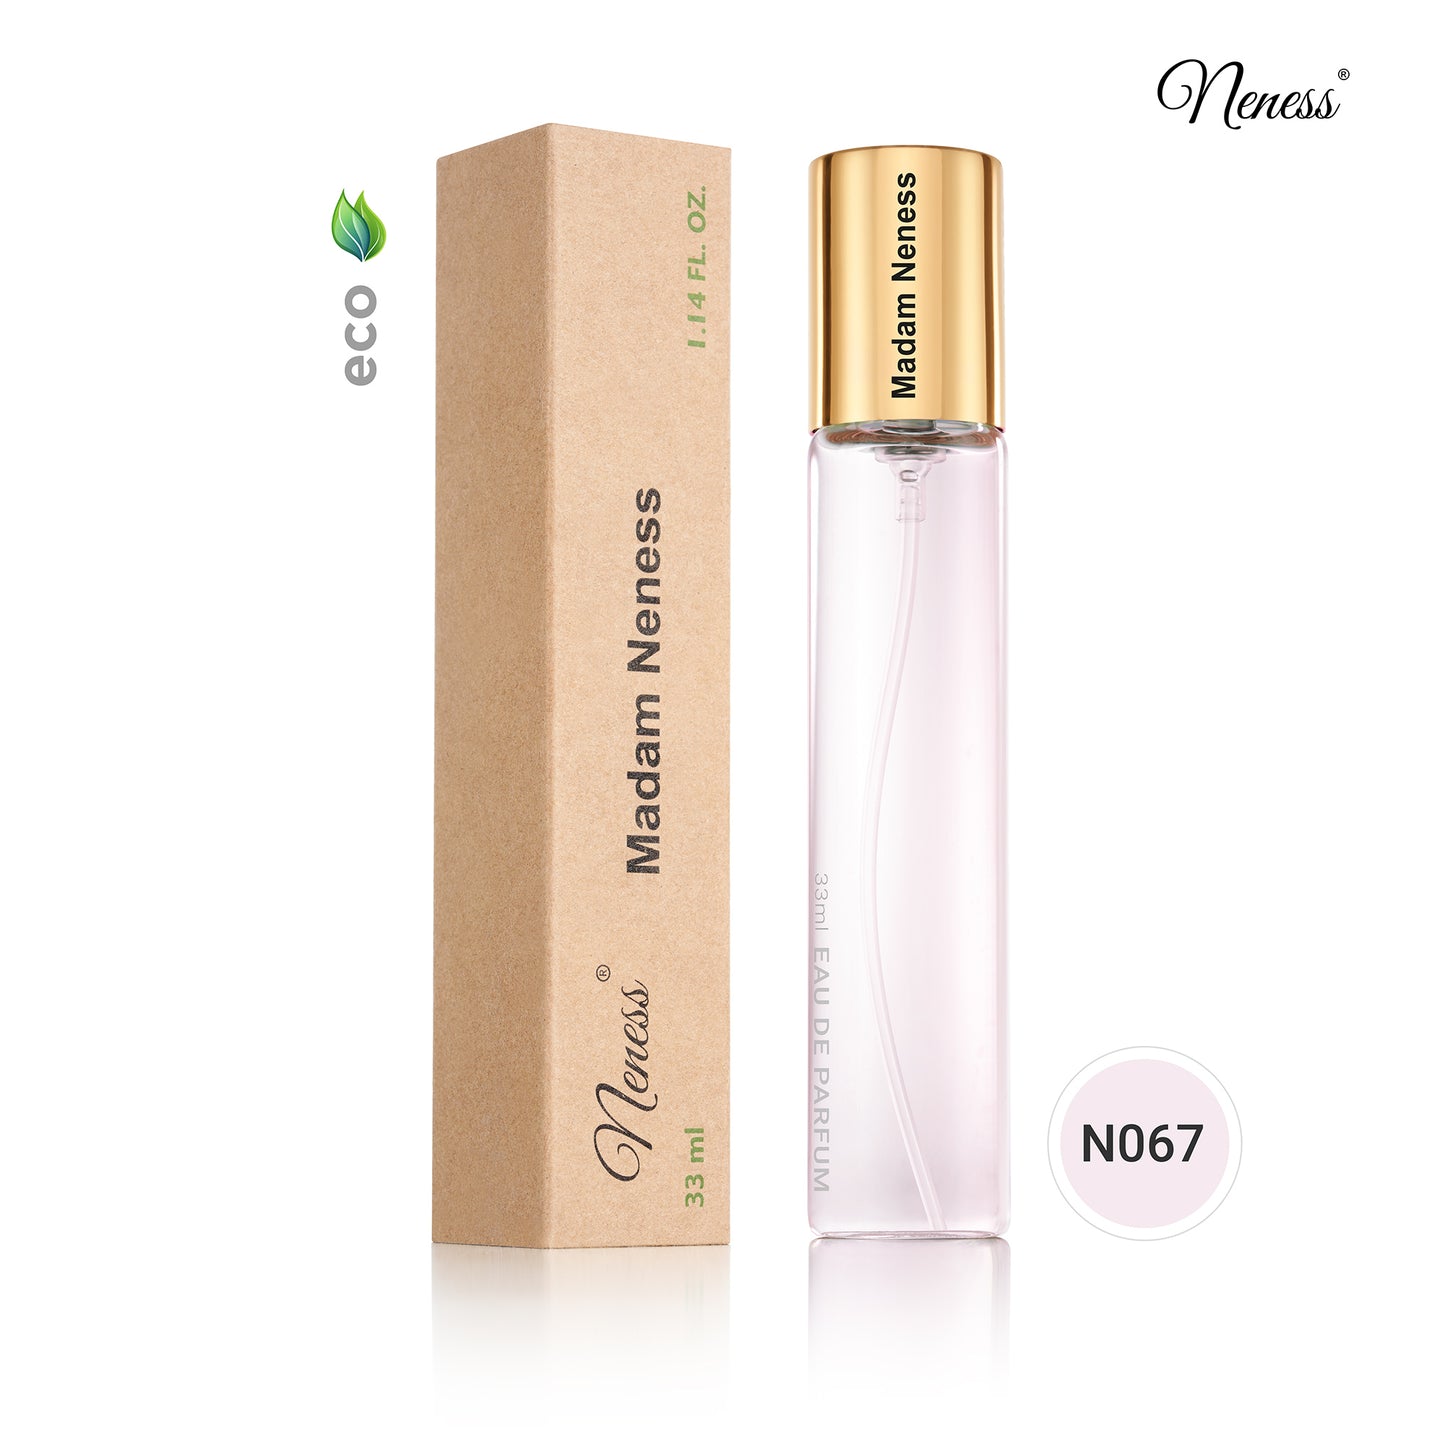 N067. Madam Neness - 33 ml - Perfume For Women